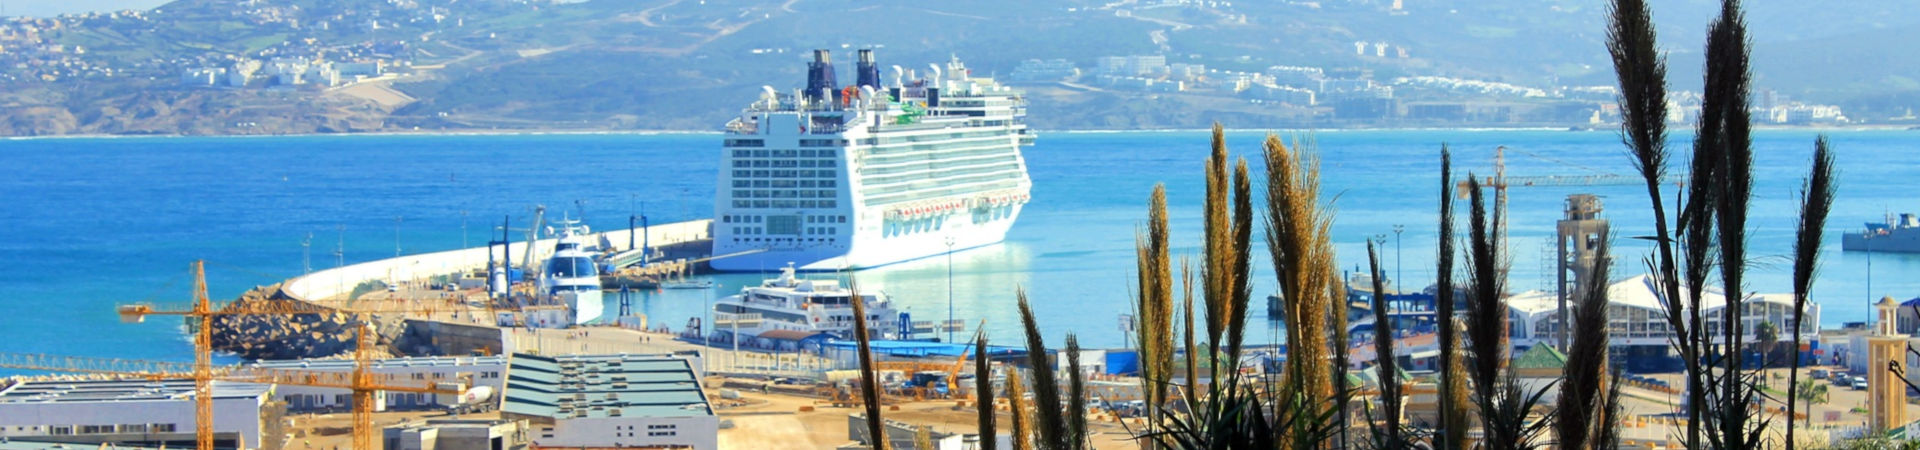 Immagine del porto di arrivo Tangeri Med per la rotta traghetto Algeciras - Tangeri Med